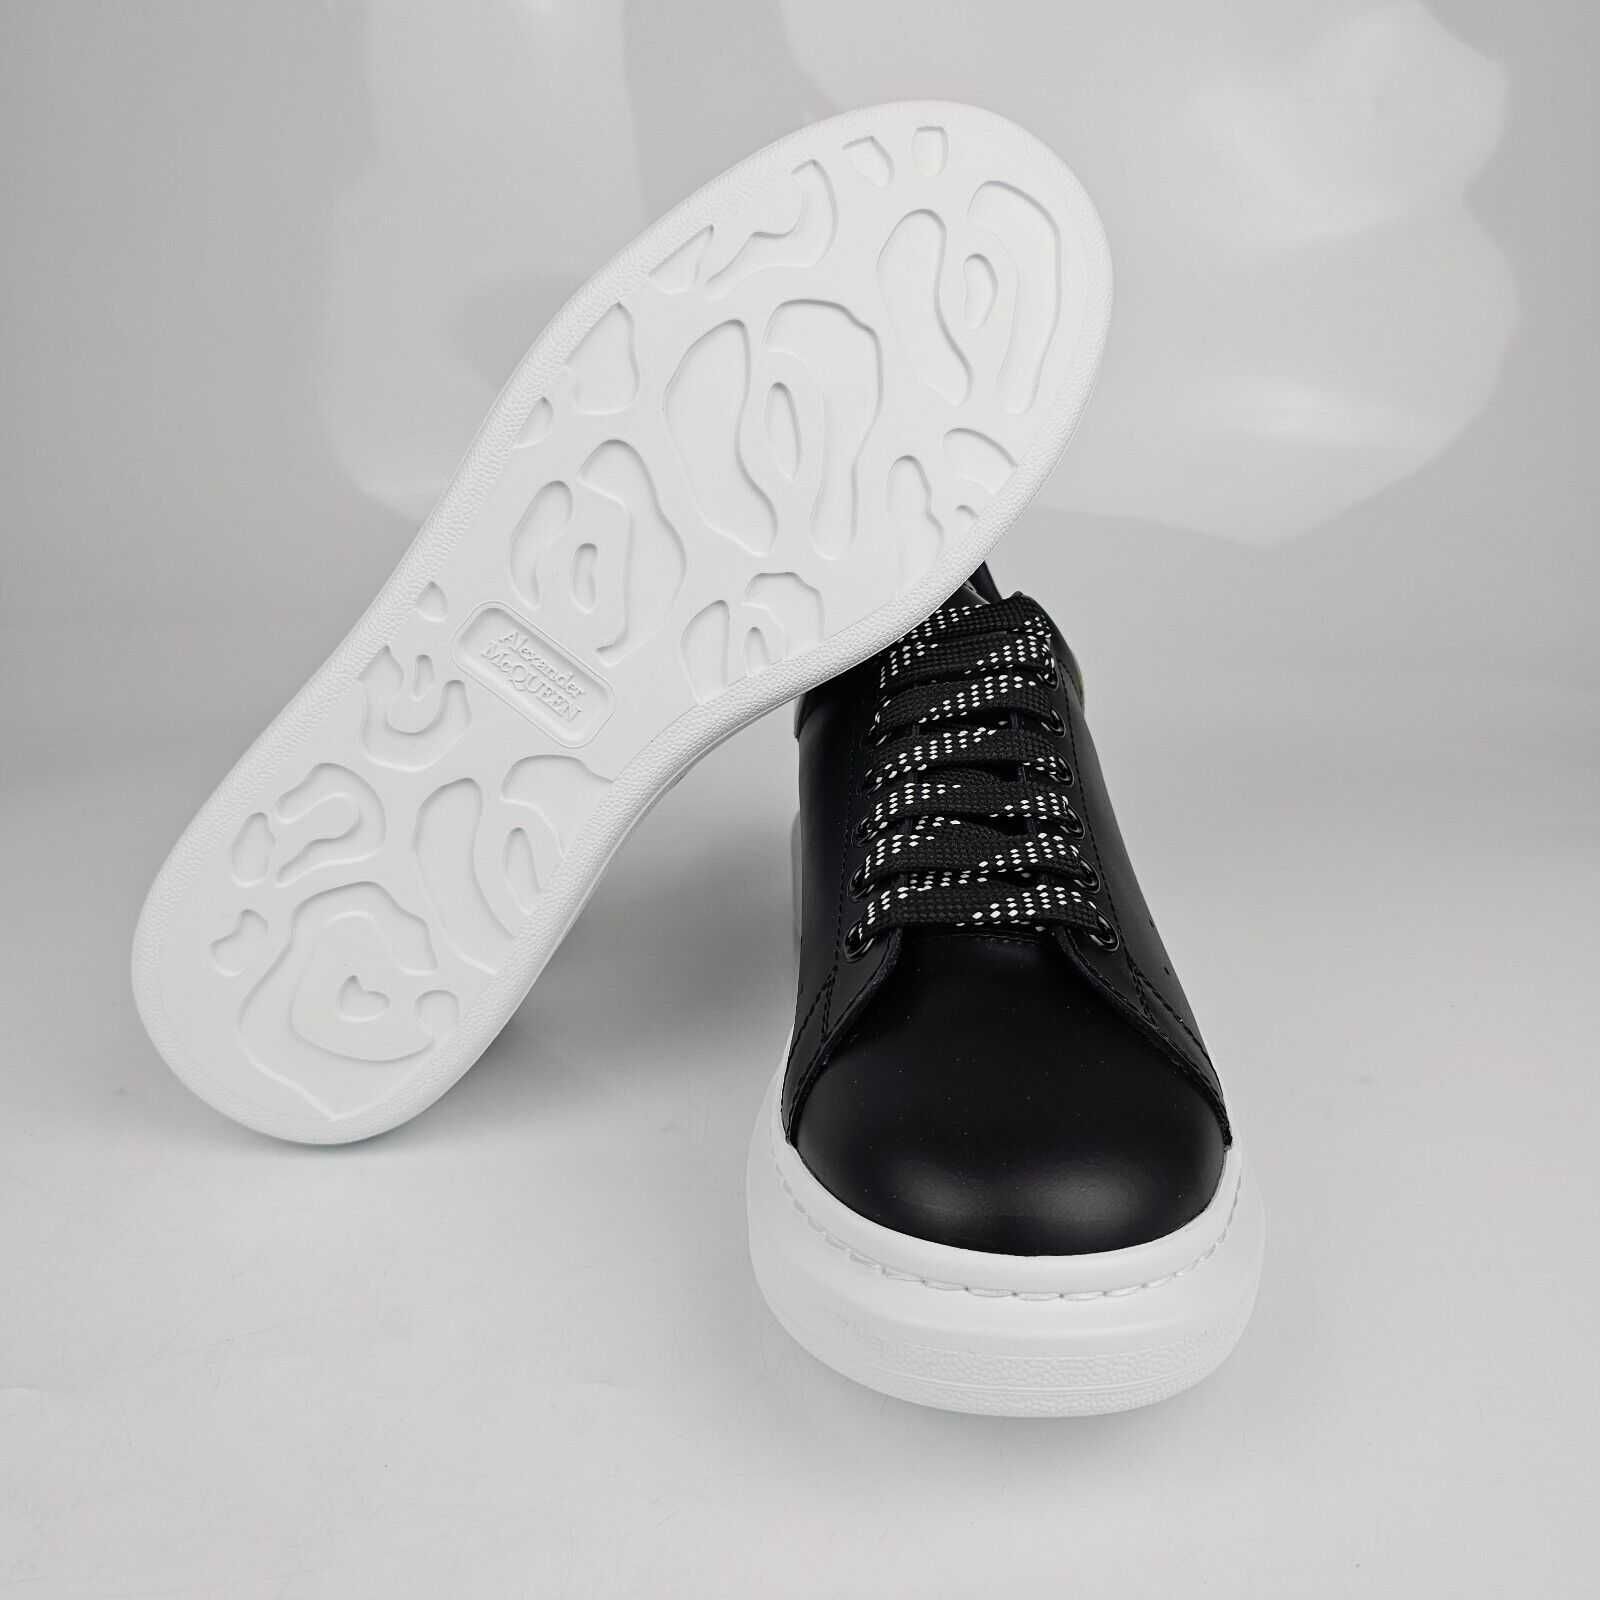 Adidasi McQueen Black & White Unisex